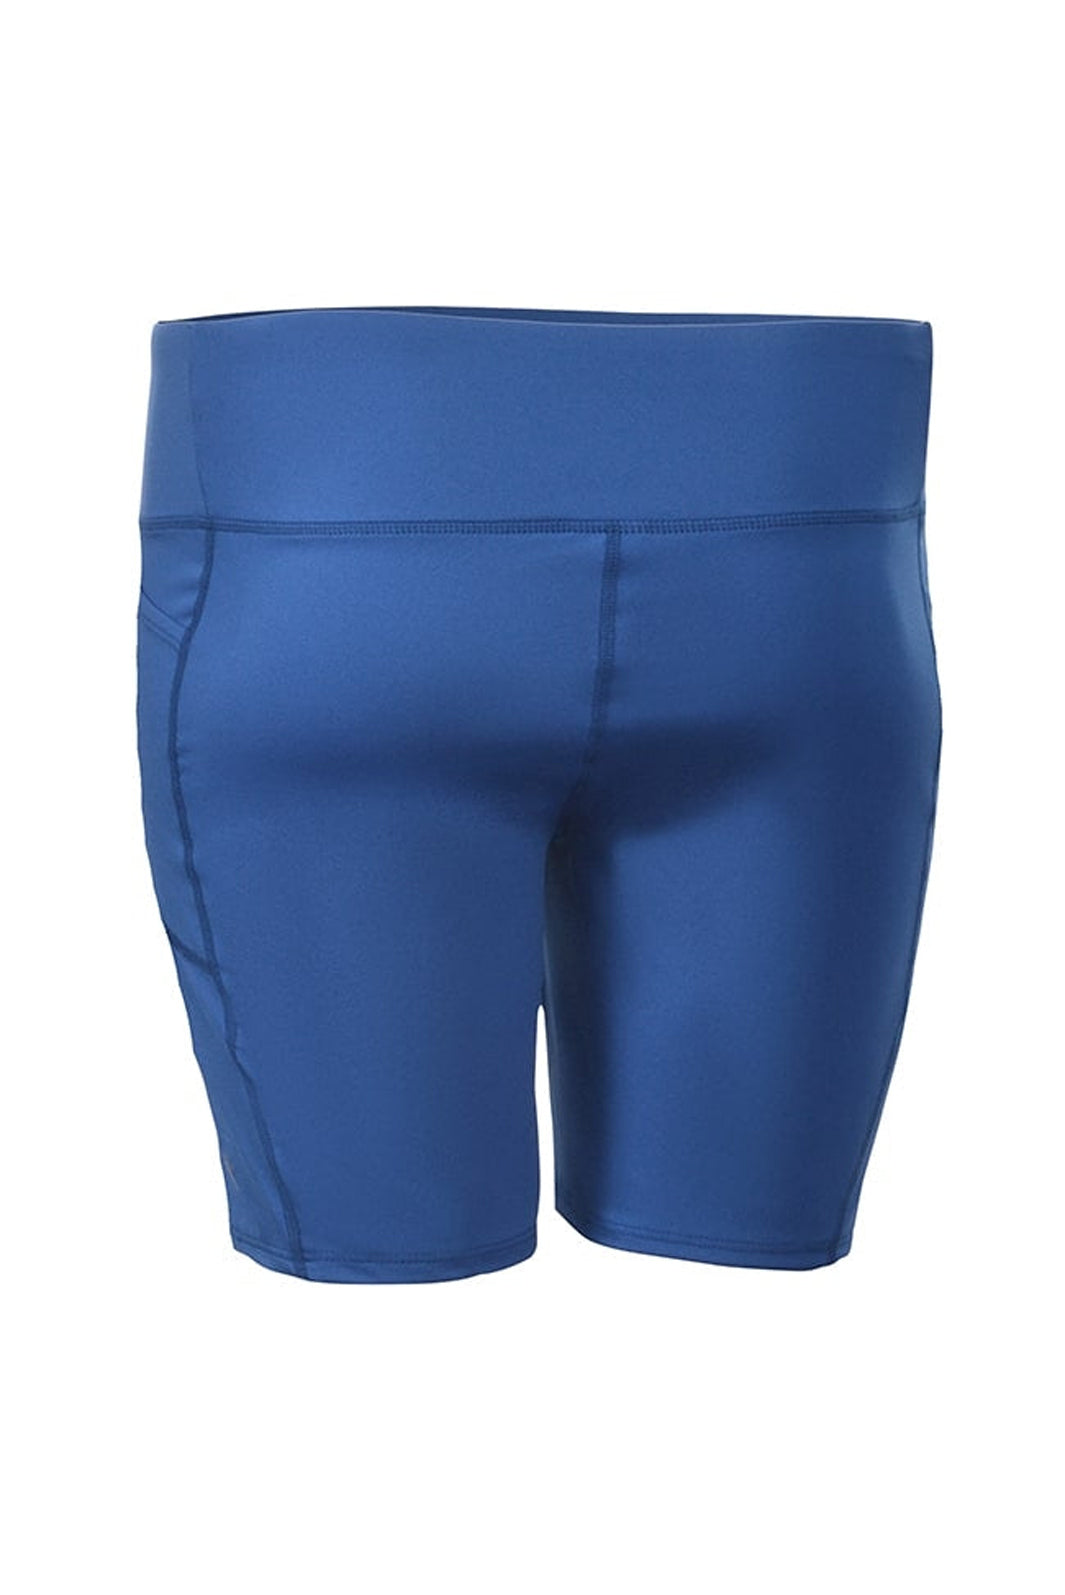 Plus Size Fresh Shorts by Sportive Plus*